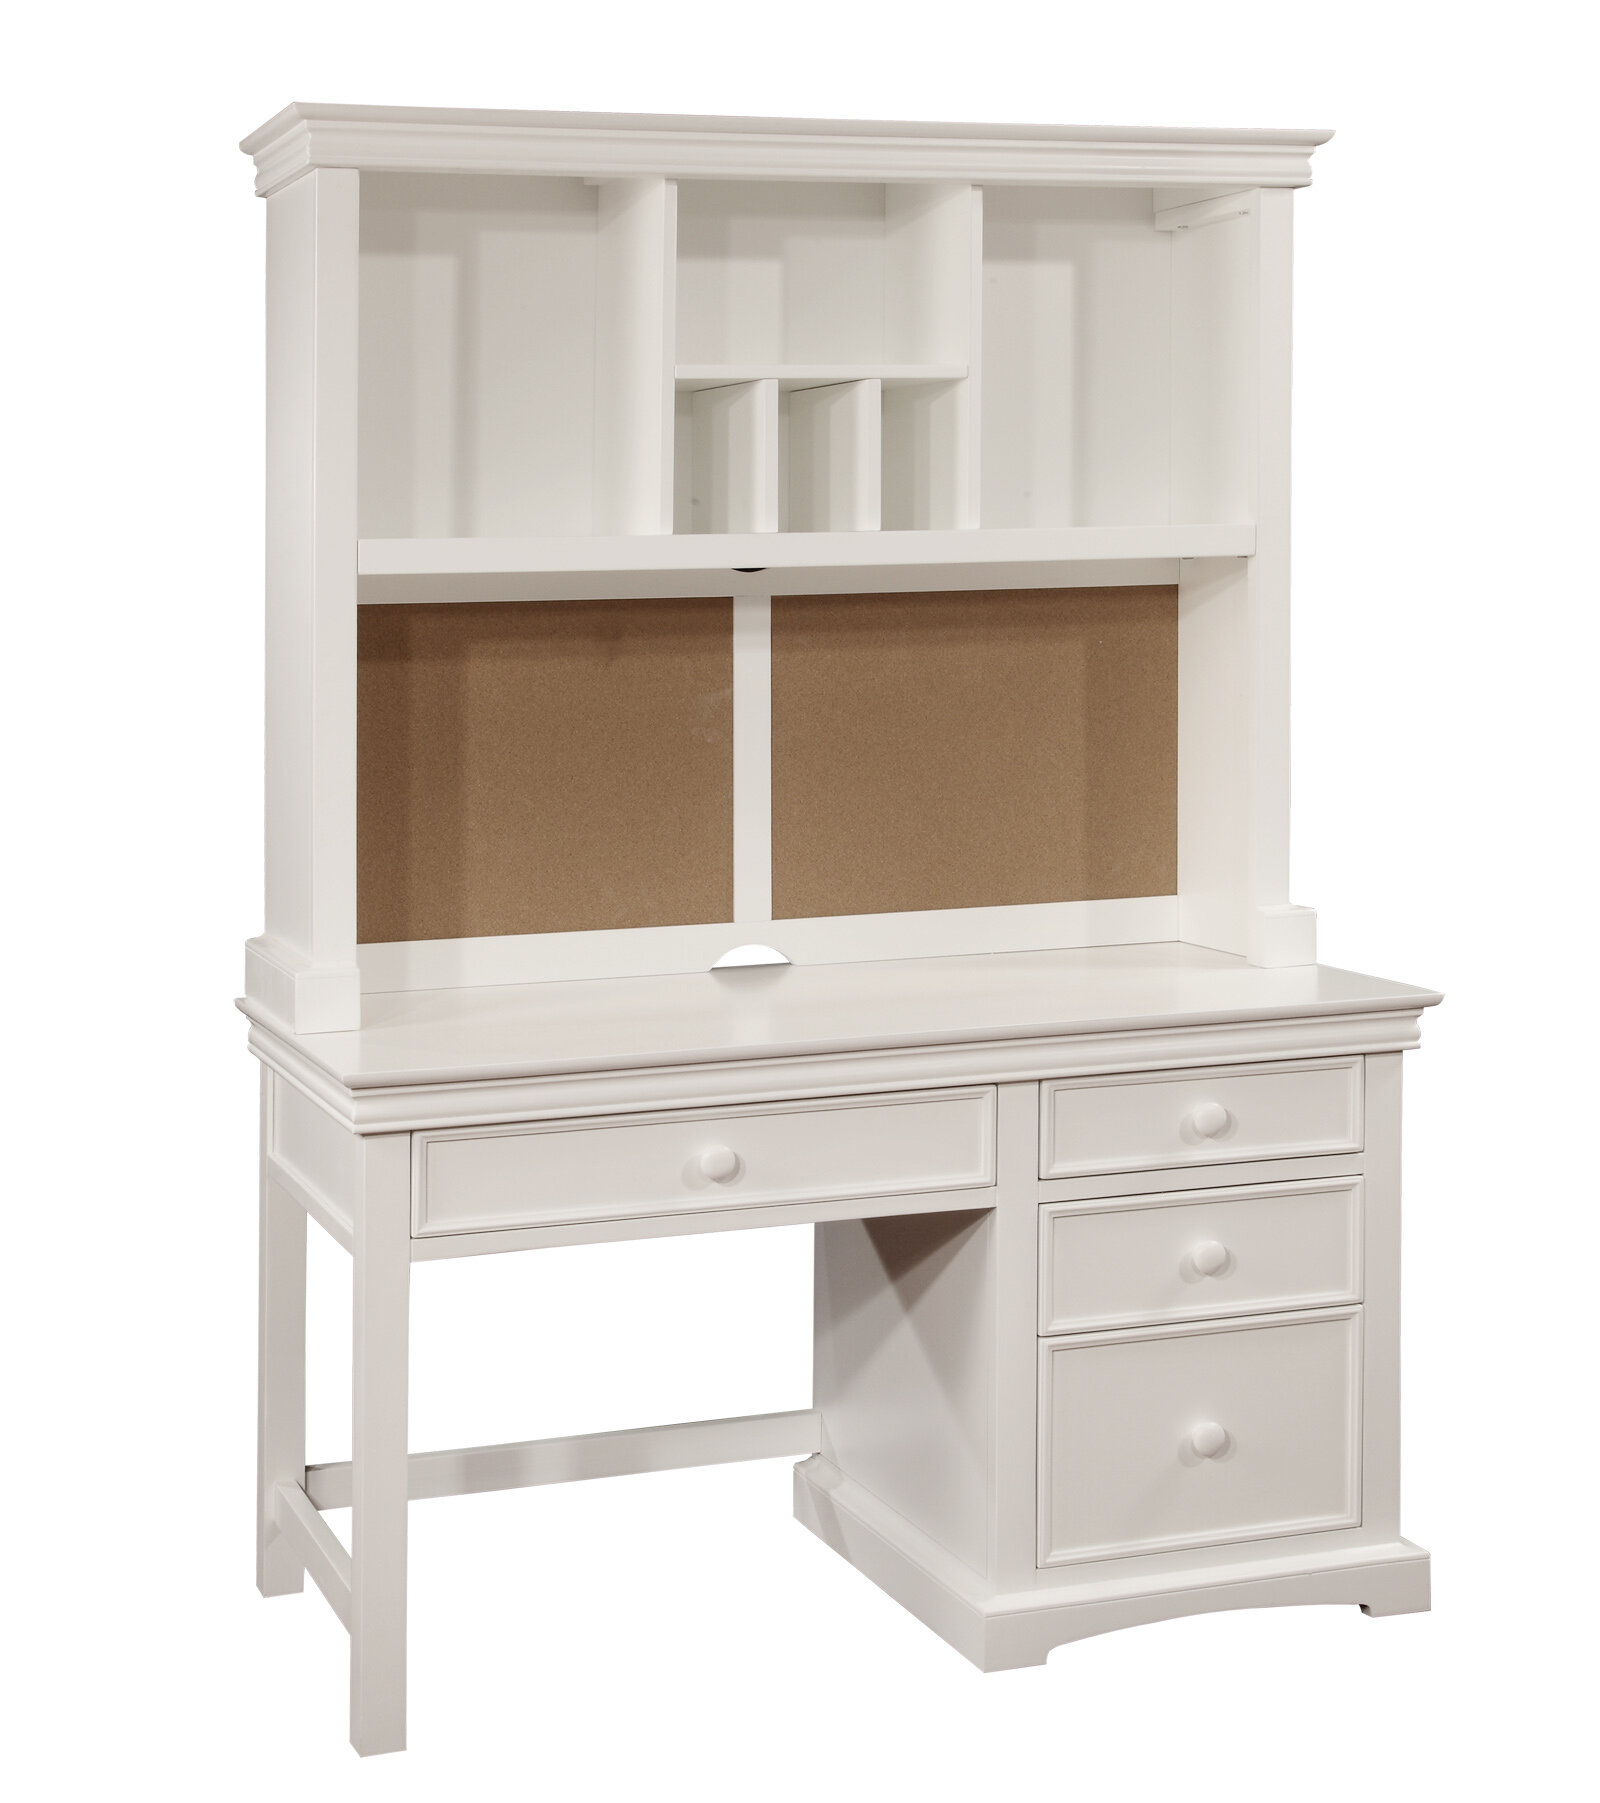 Bolton Furniture 865055500 Cambridge Pedestal Desk with Hutch Set, White